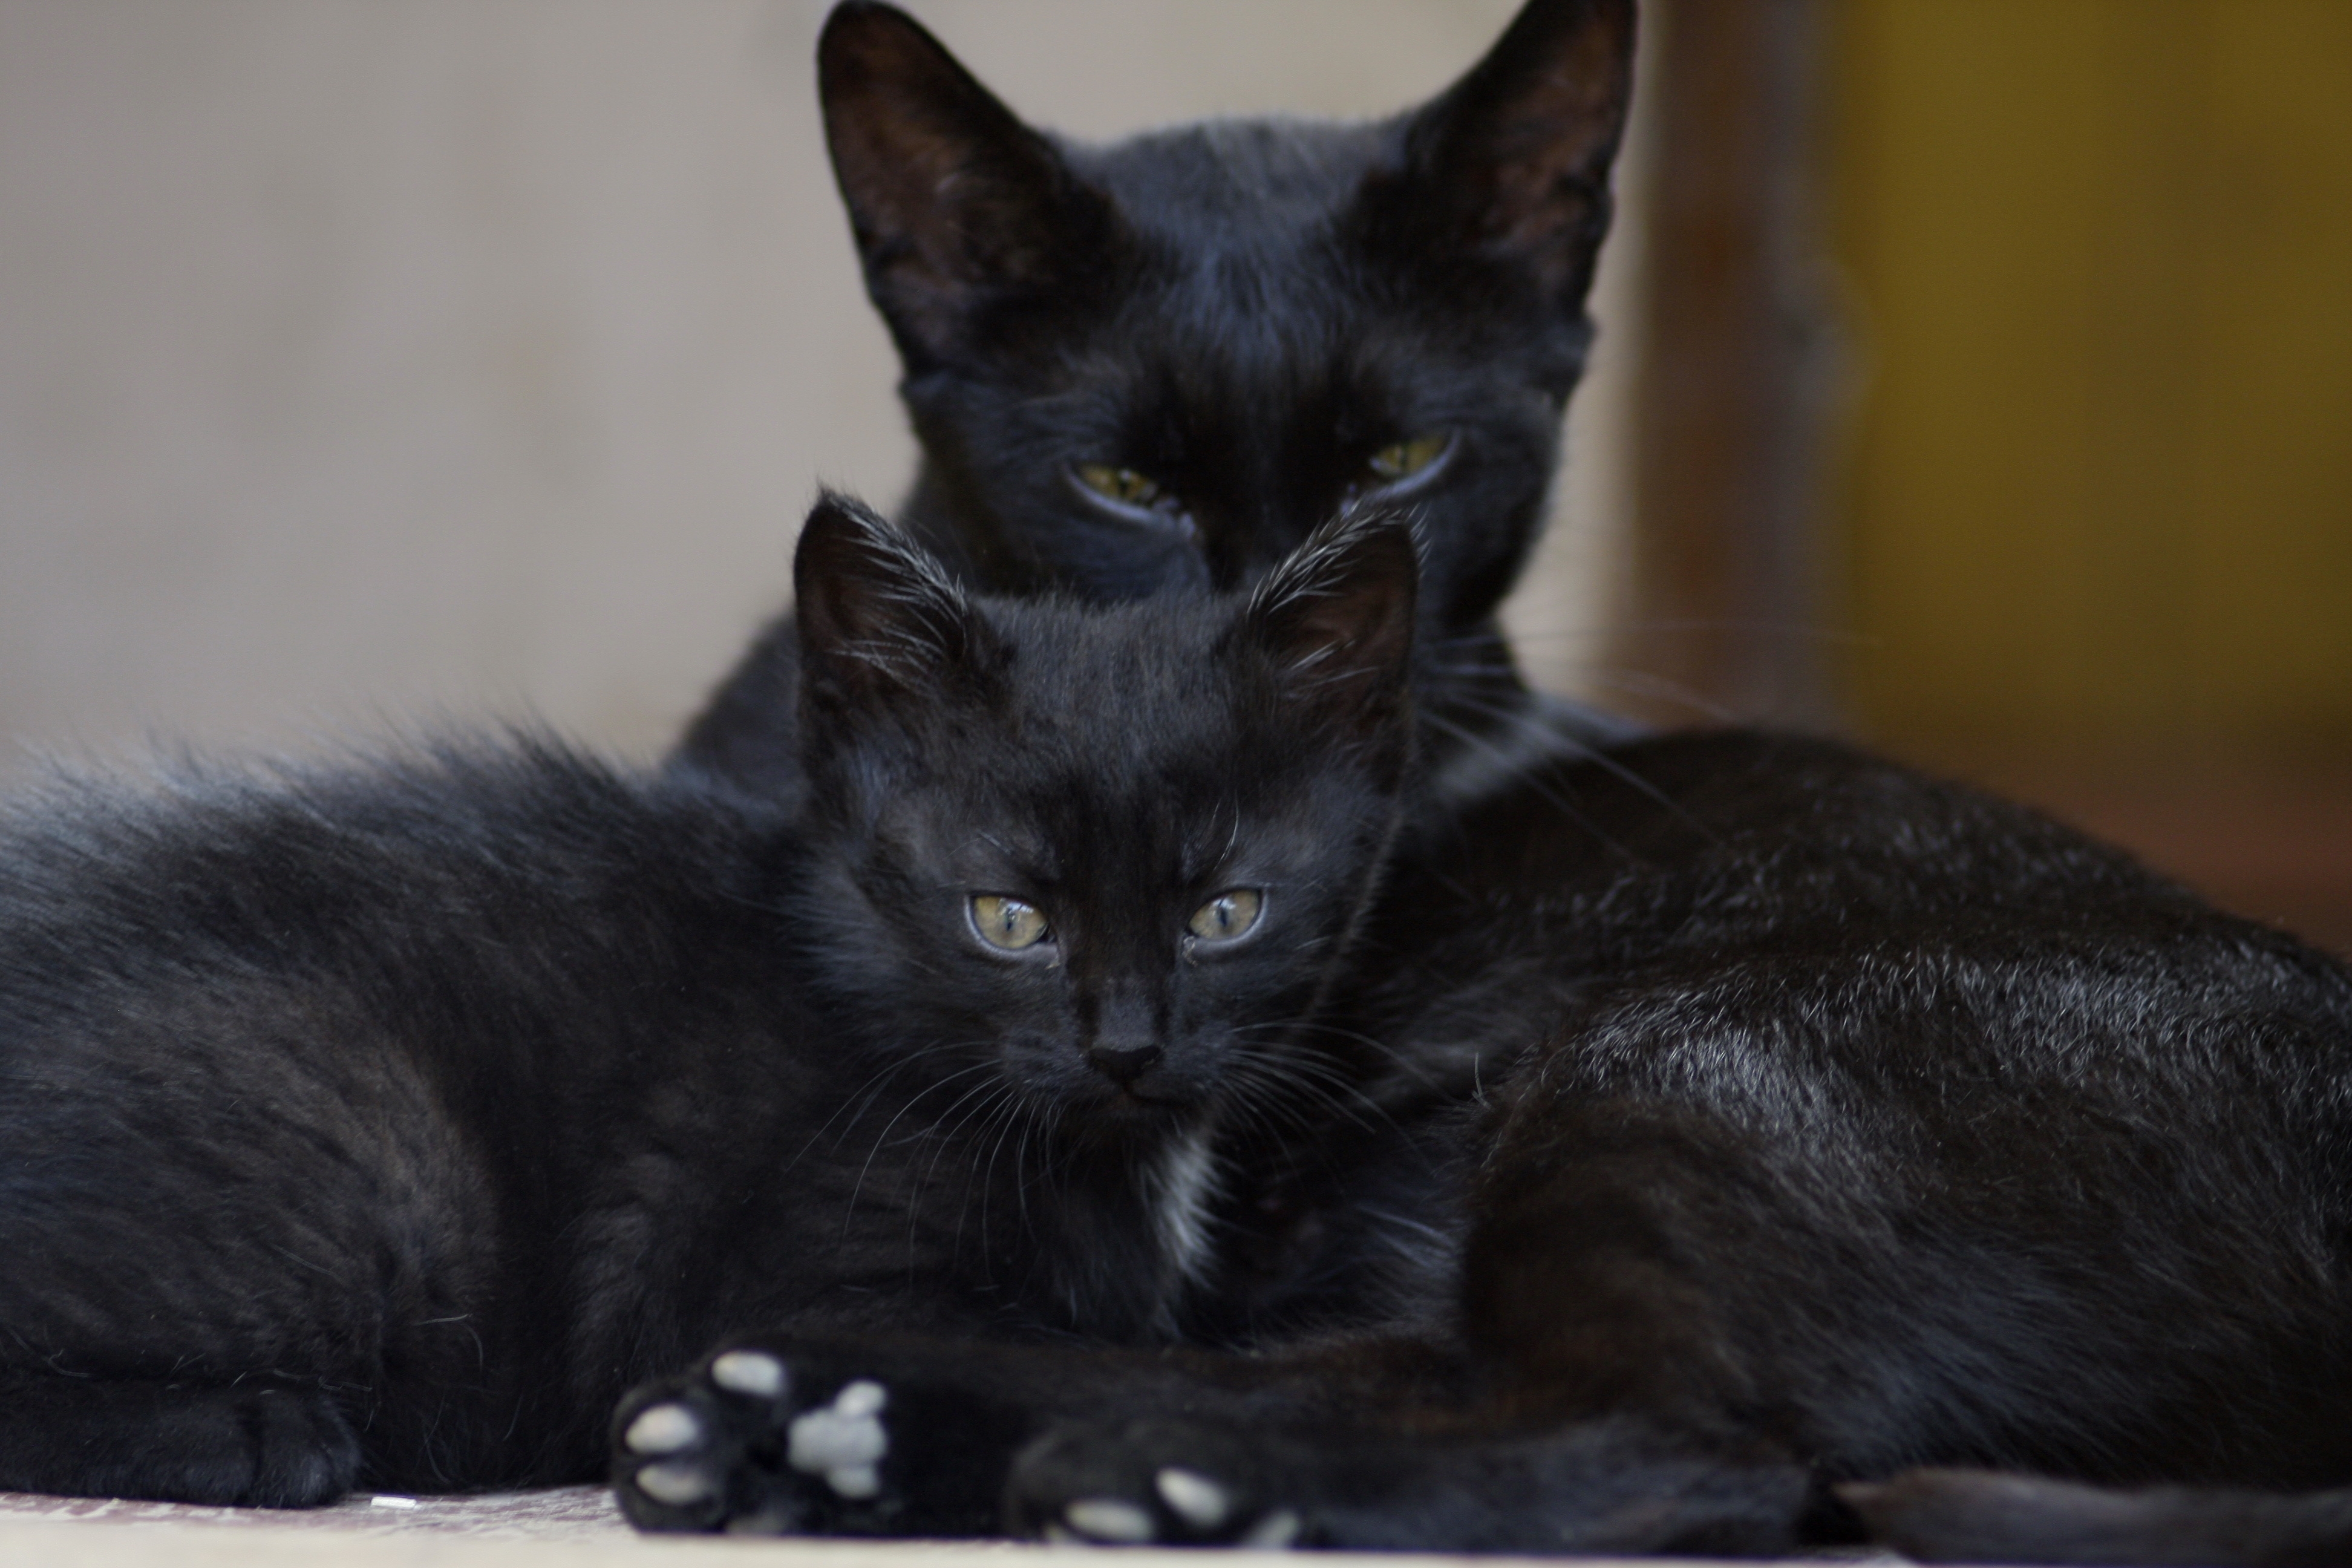 Скачать обои Черные Коты на телефон бесплатно